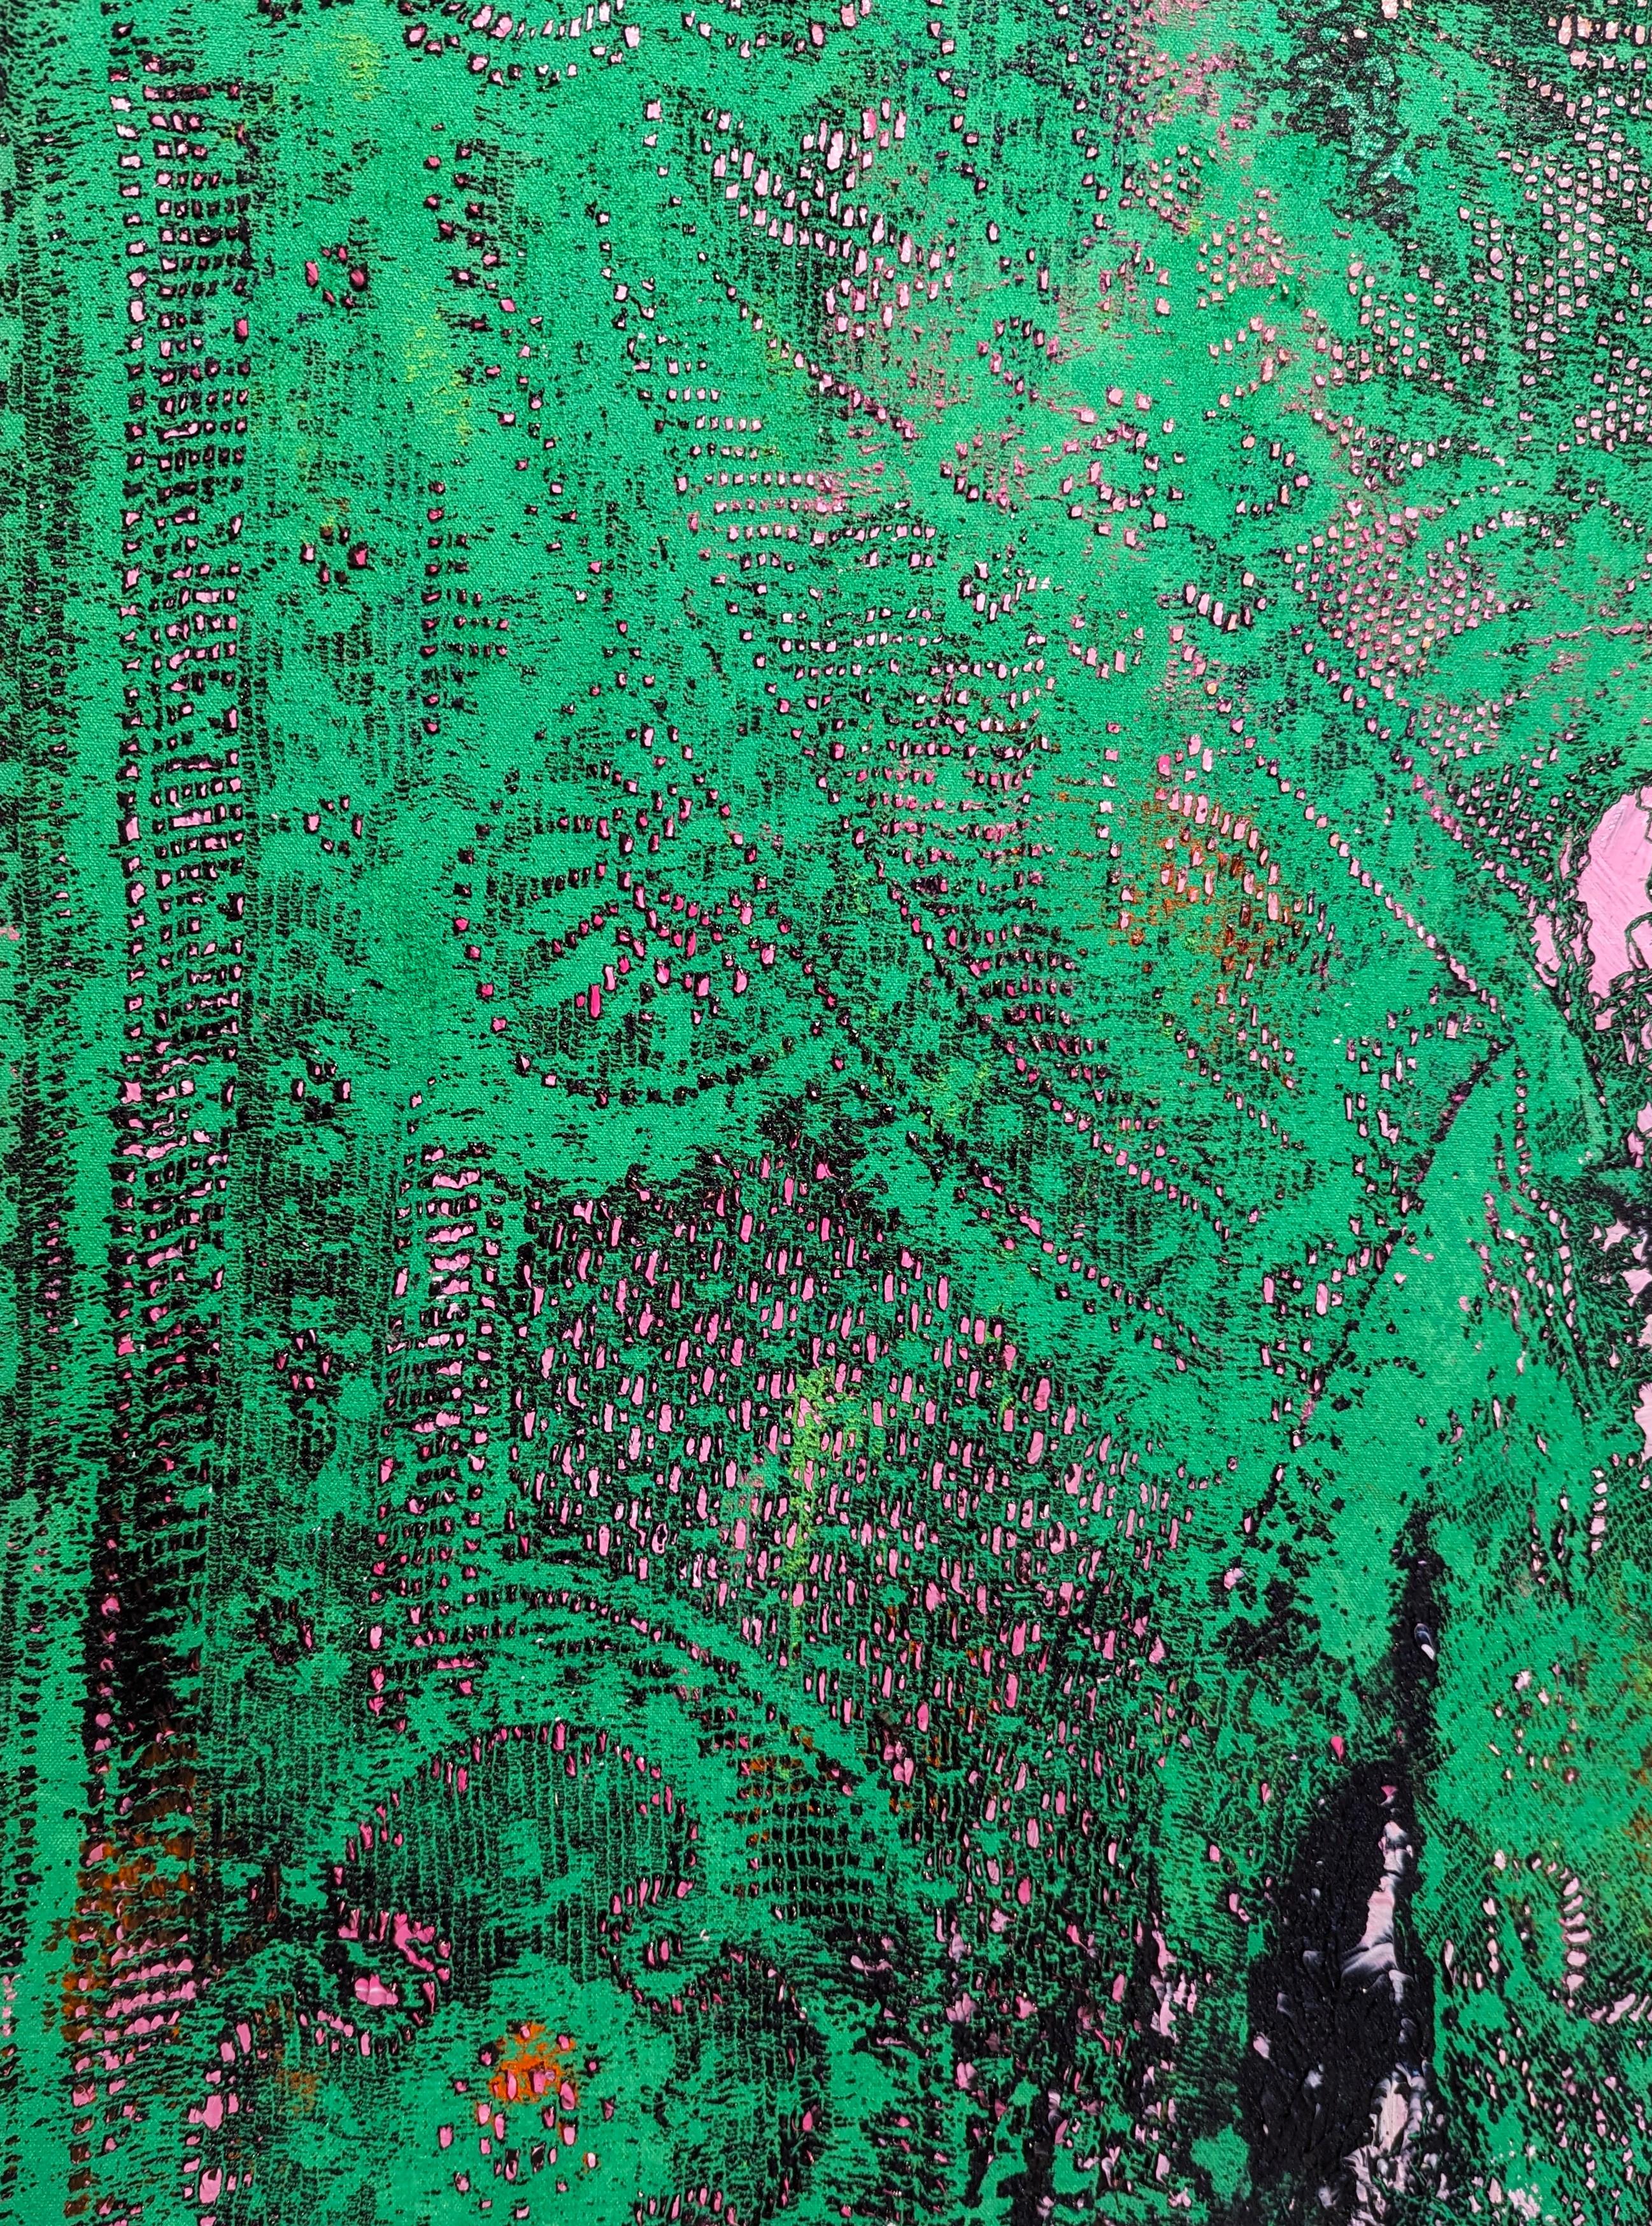 Peinture acrylique contemporaine verte et rose dans un paon unique à la texture de dentelle par l'artiste de Houston Mark Flood. À l'origine, la dentelle était un élément d'arrière-plan dans les œuvres de Flood, mais elle a fini par devenir un motif